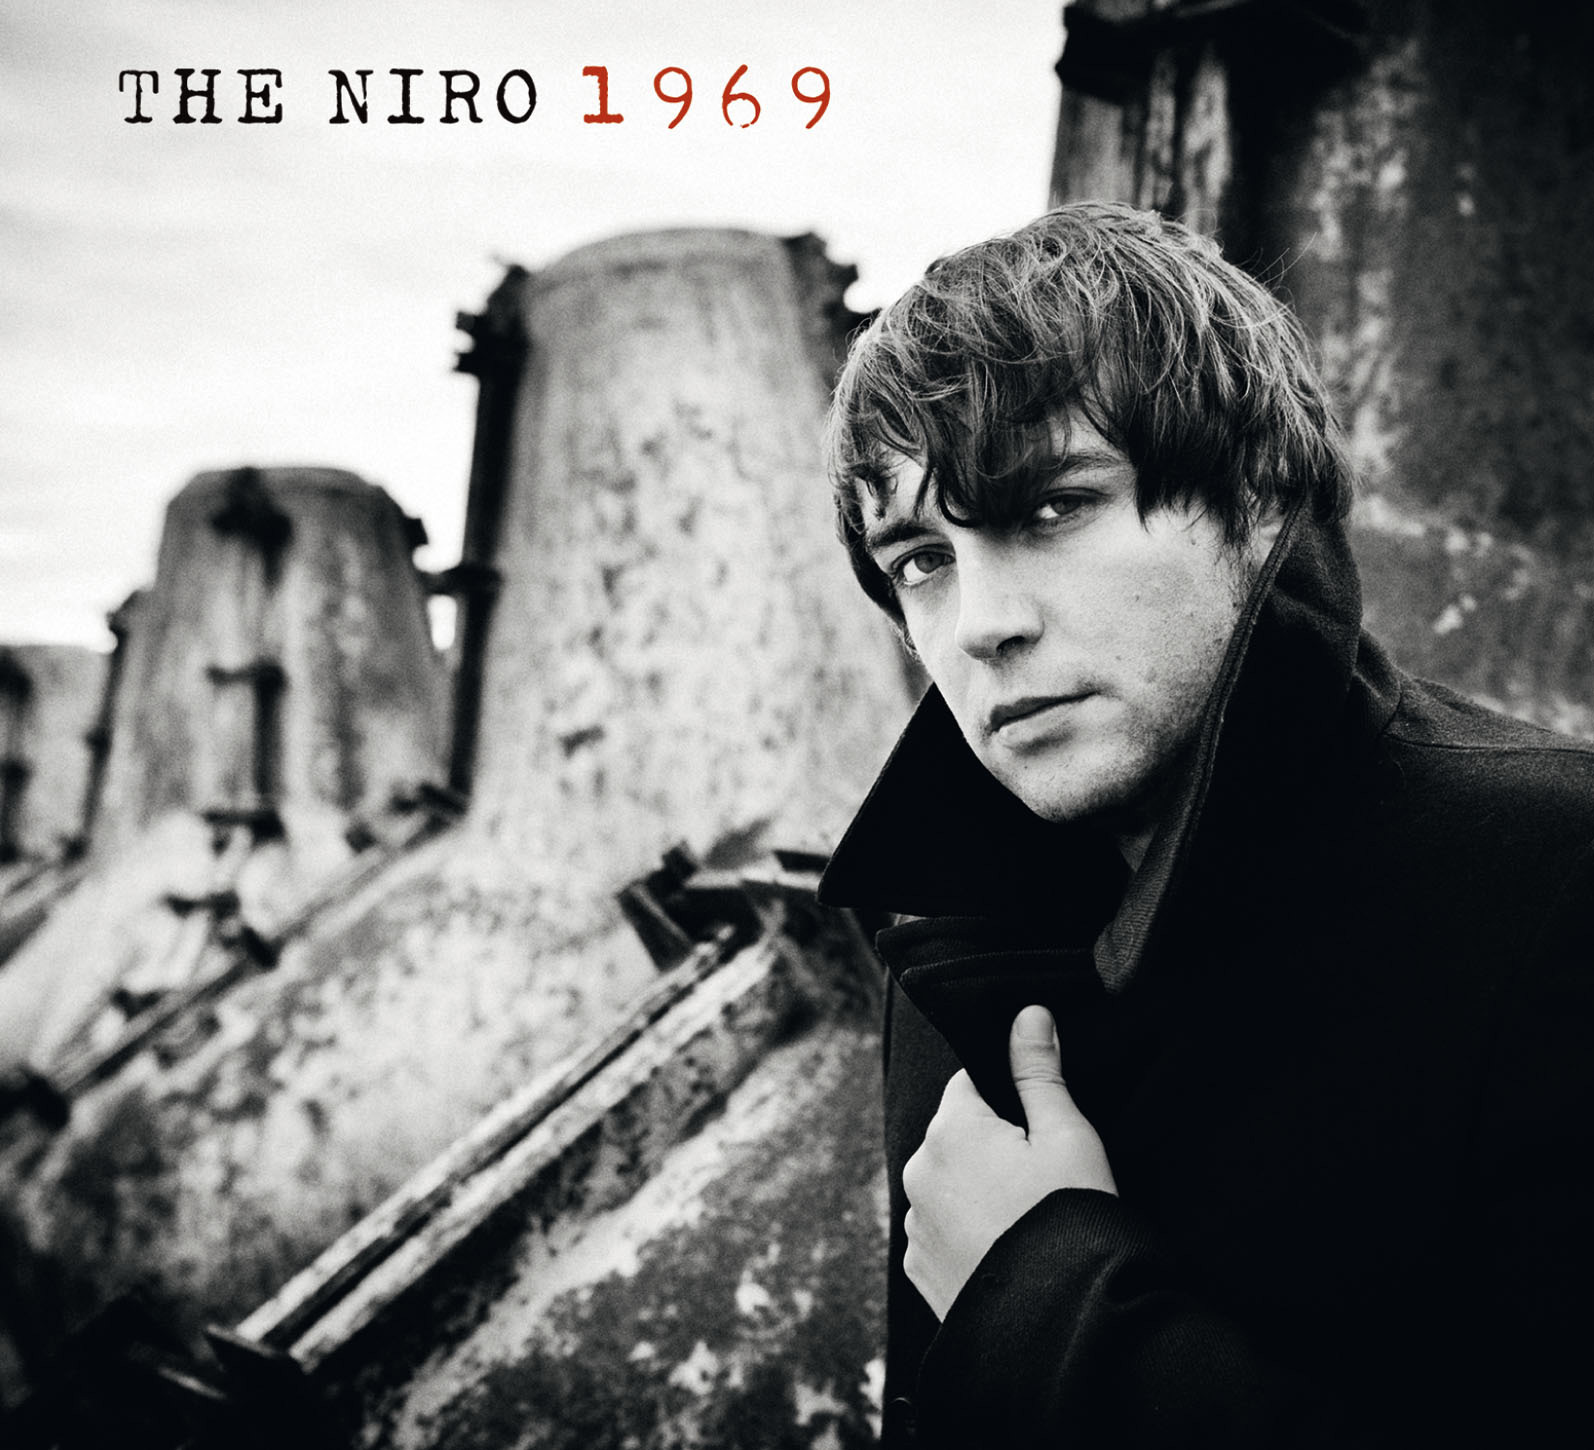 THE NIRO Dal 17 gennaio è in radio e in vendita in tutti gli store digitali il singolo "1969"